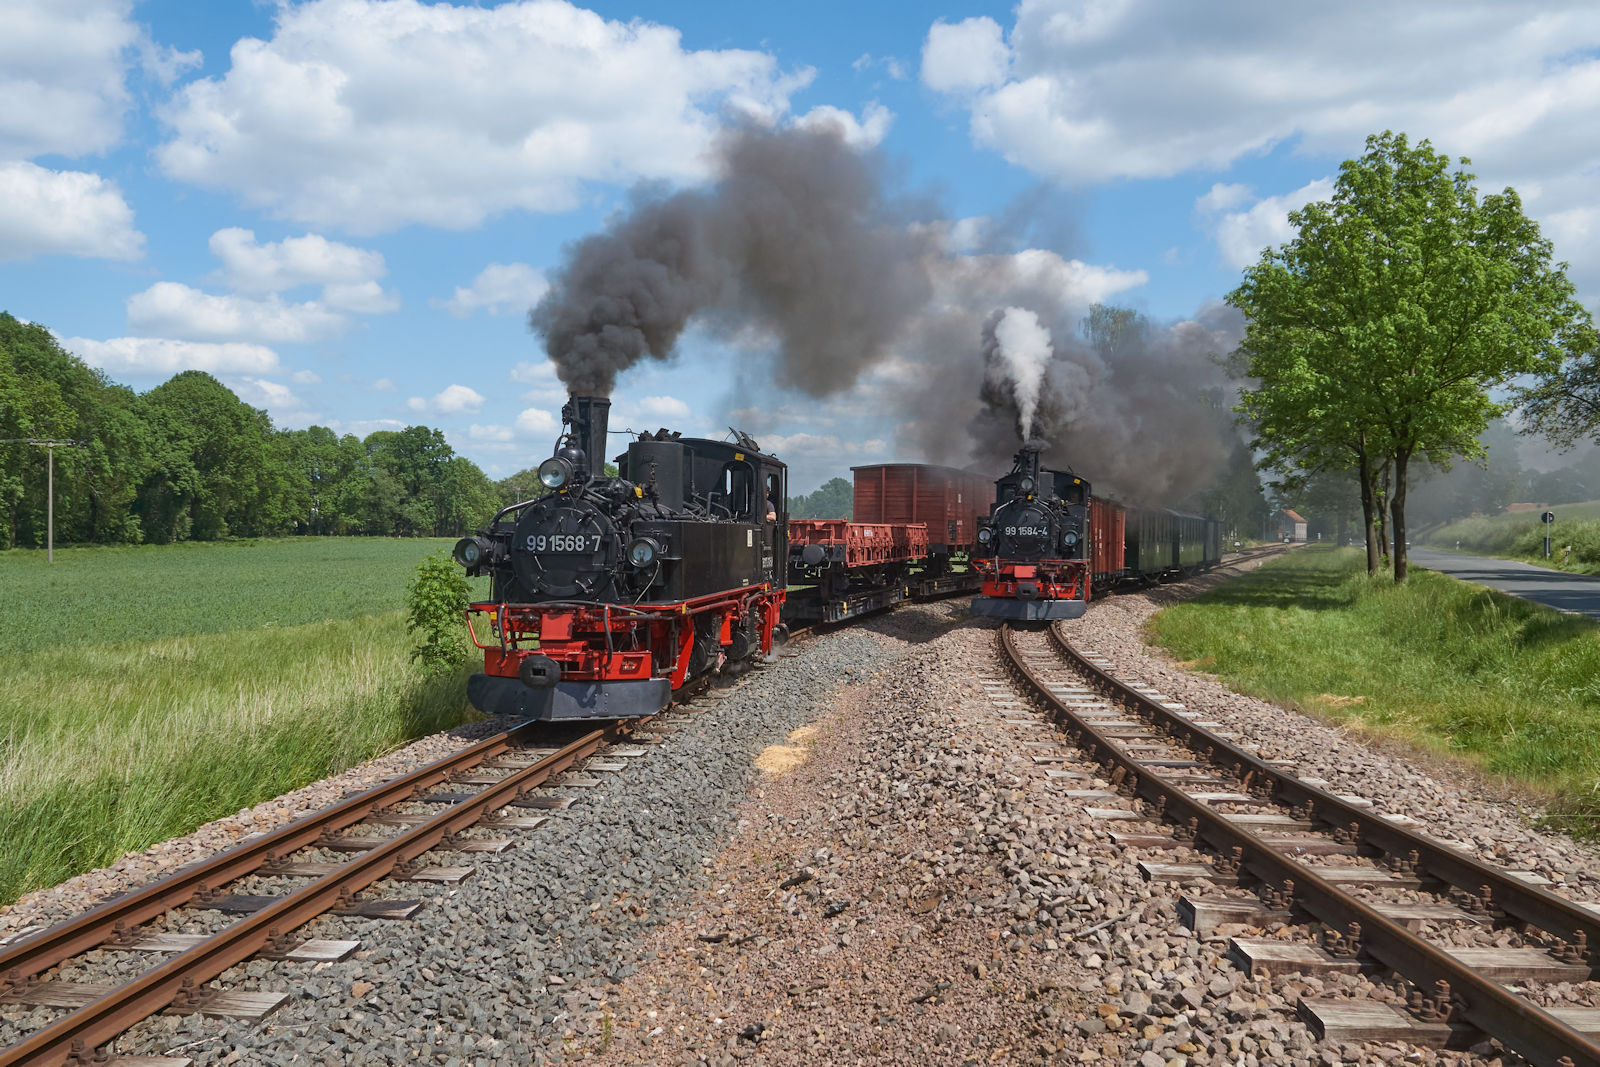 Parallelausfahrt in Nebitzschen: Am 22.05.2022 verließ 99 1584 mit einem Rollwagenzug Nebitzschen in Richtung Glossen und 99 1568 fuhr mit einem GmP in Richtung Kemmlitz.